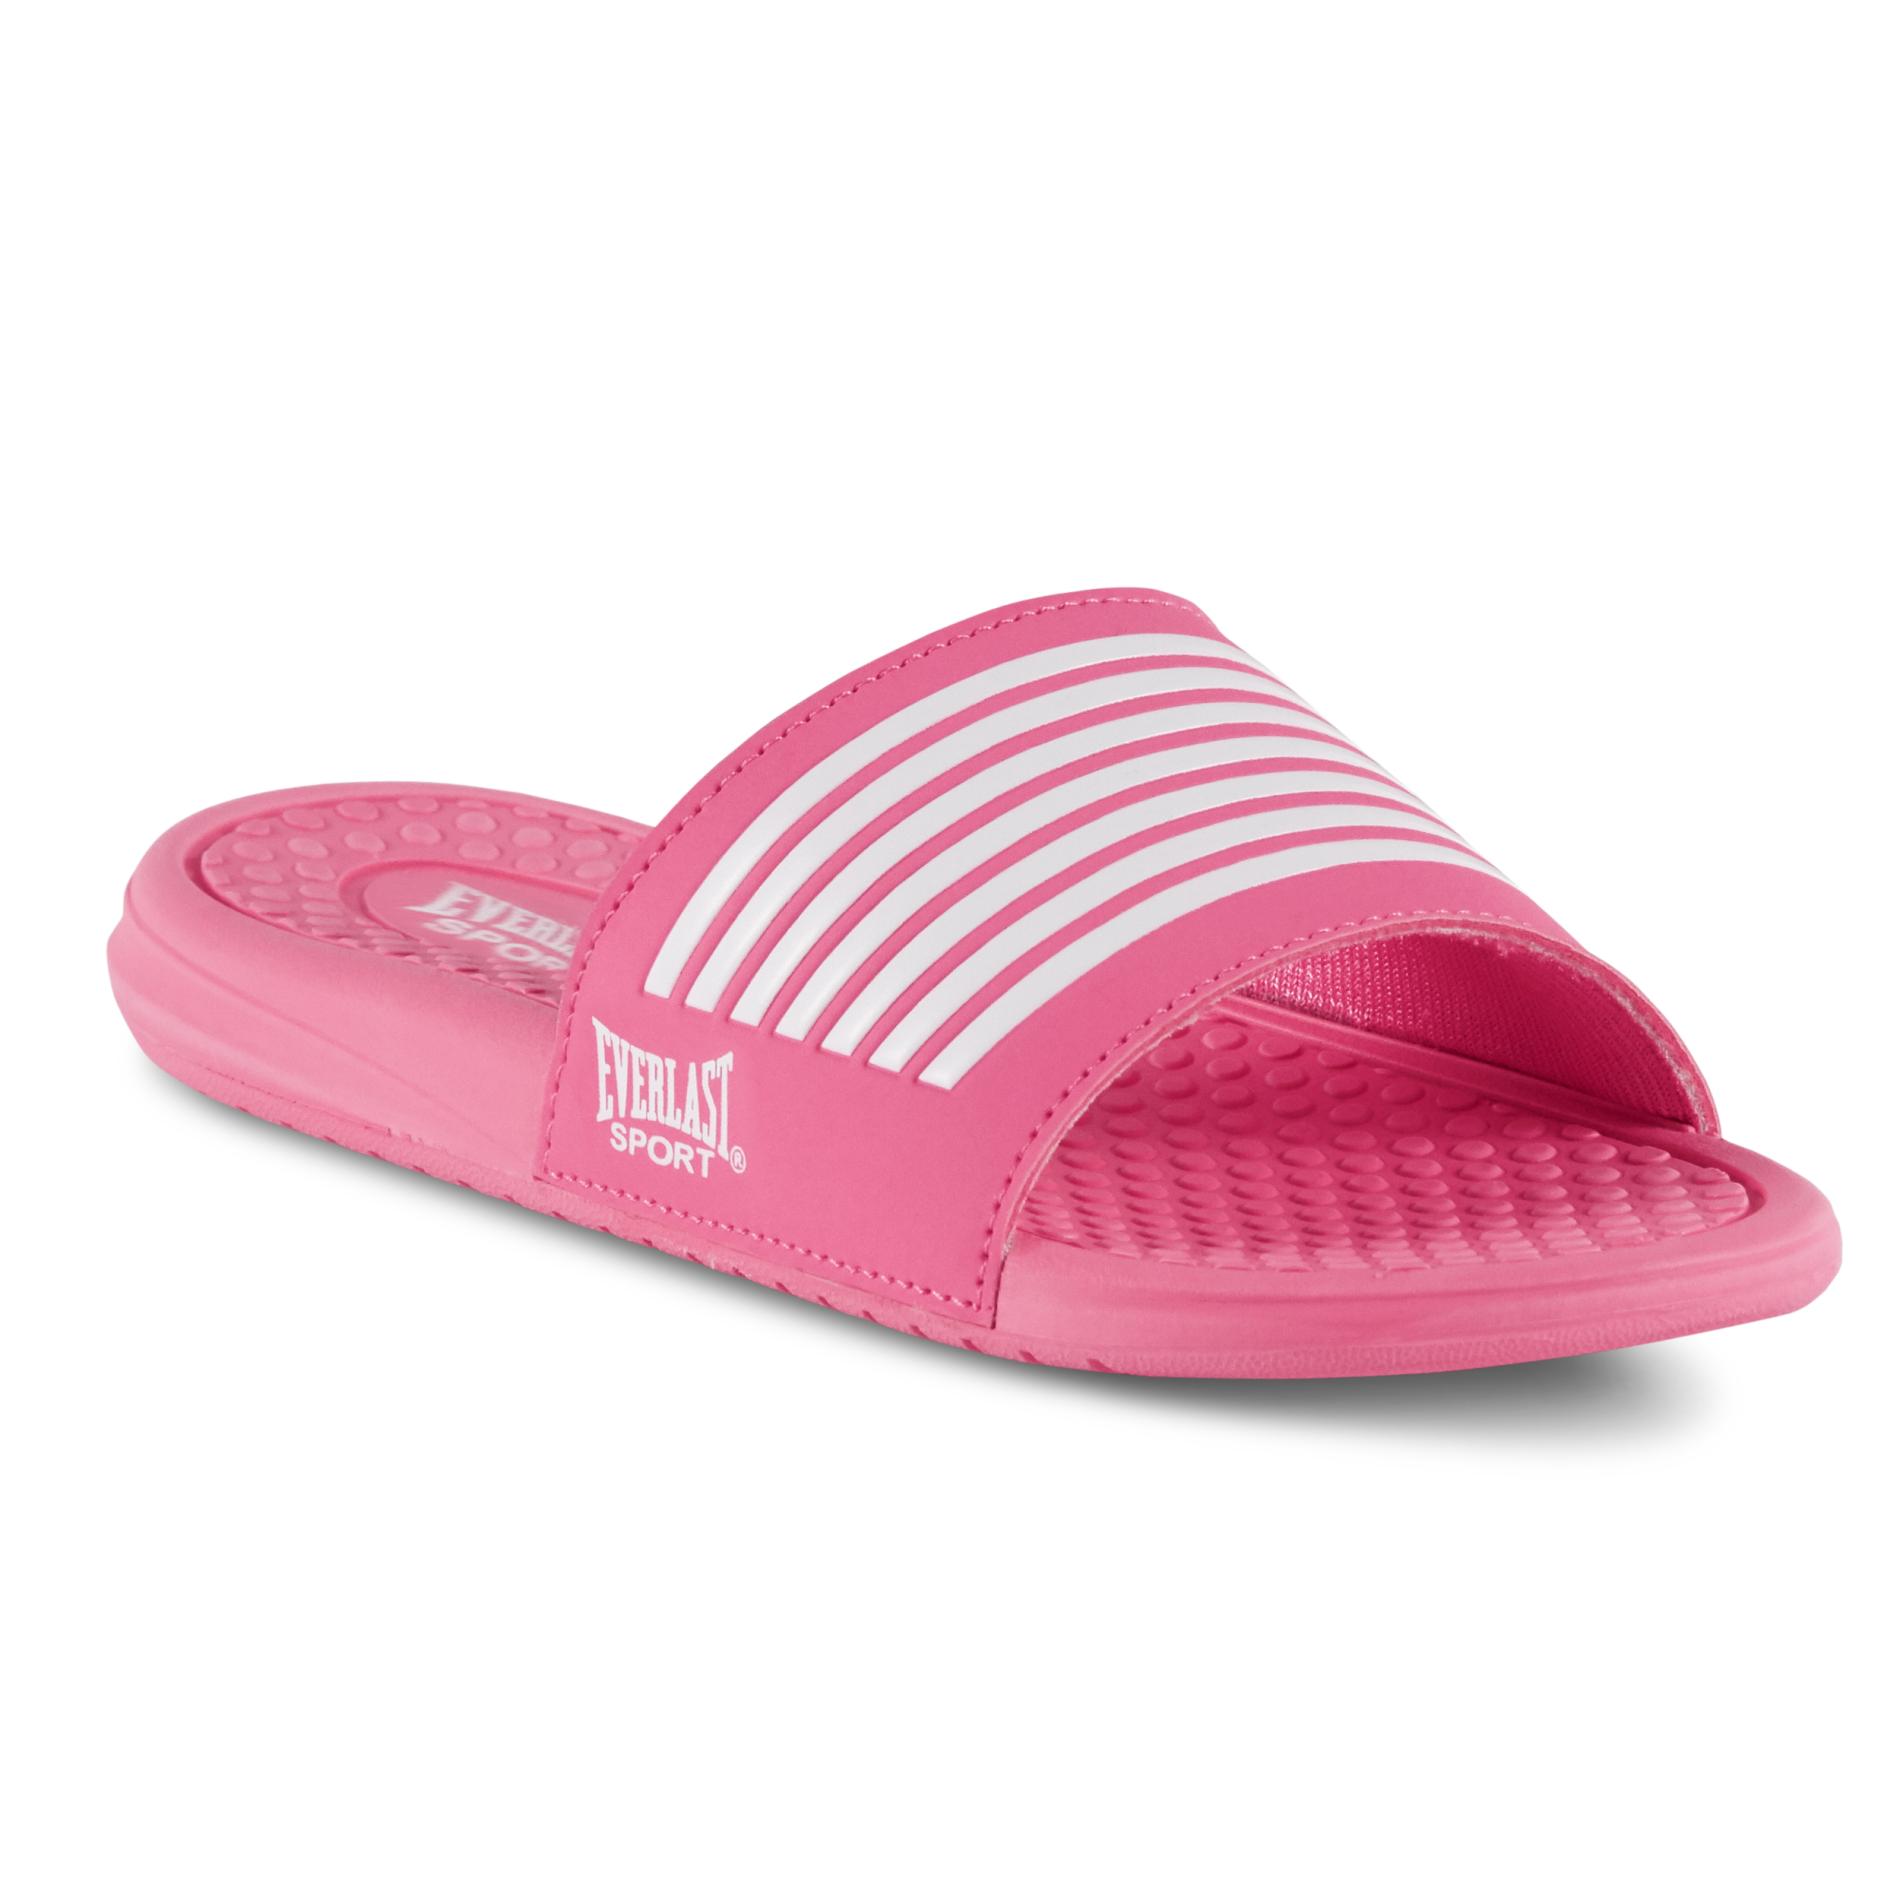 girls slippers kmart